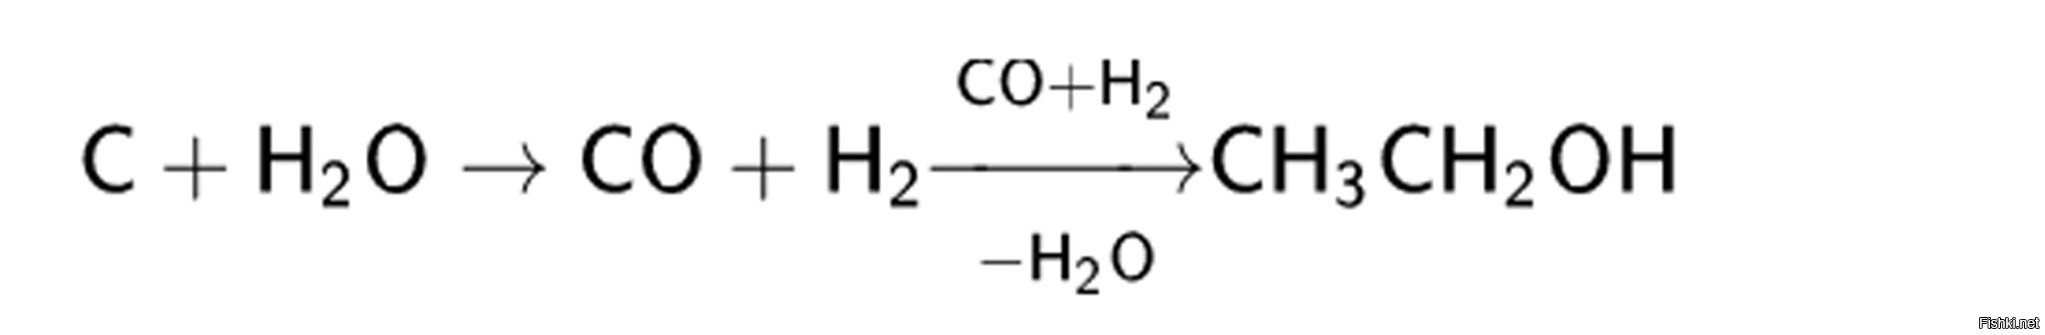 Этаналь диэтиловый эфир. Диэтиловый эфир из метанола. Диэтиловый эфир в оксид углерода. Диэтиловый эфир из ацетальдегида. Метанол из Синтез газа уравнение.